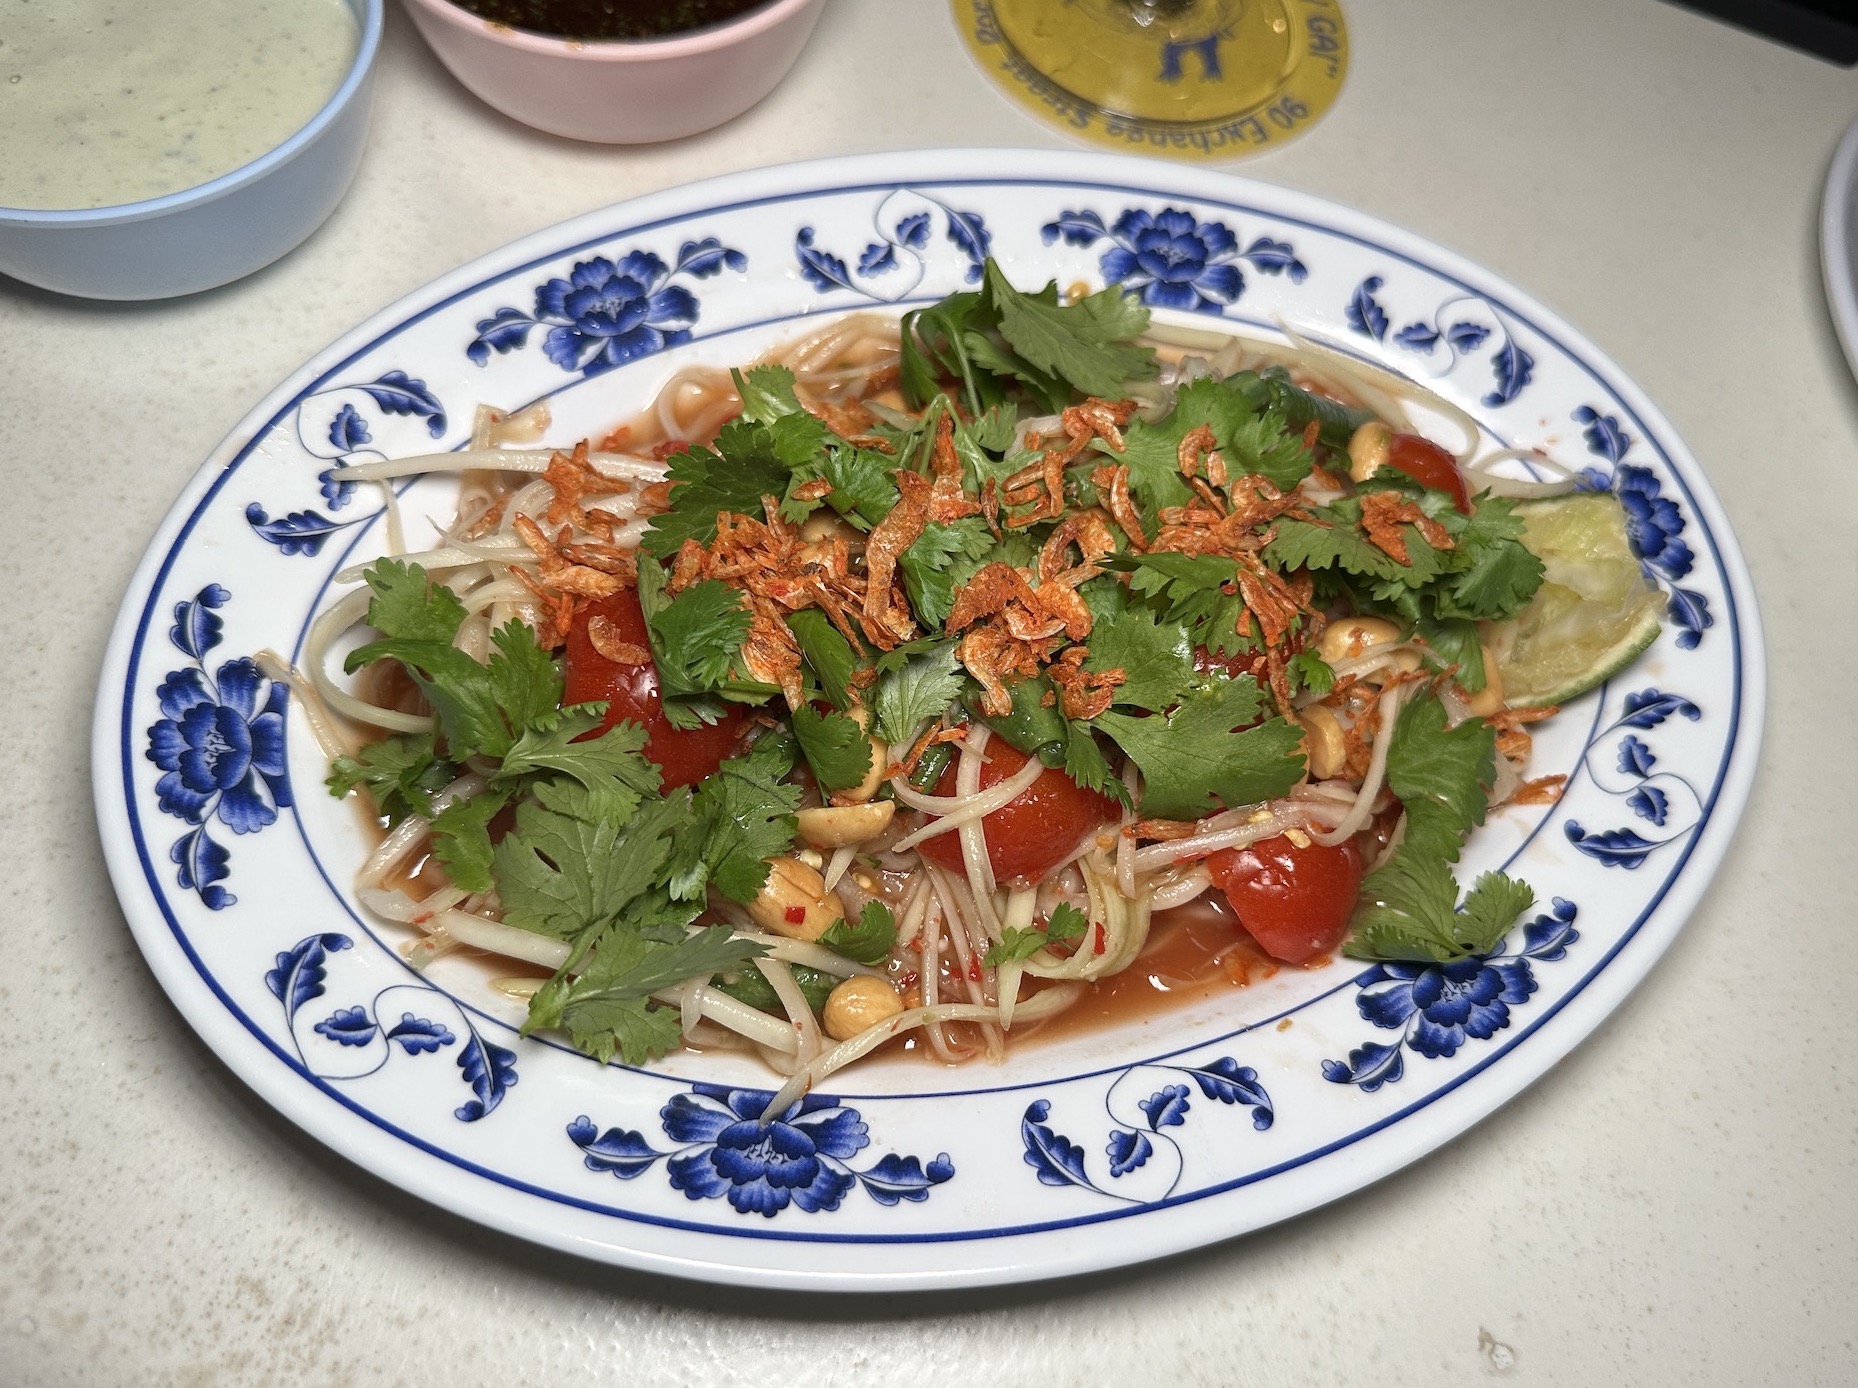 Thai Food Som Tum Salad from Crispy Gai Portland Maine